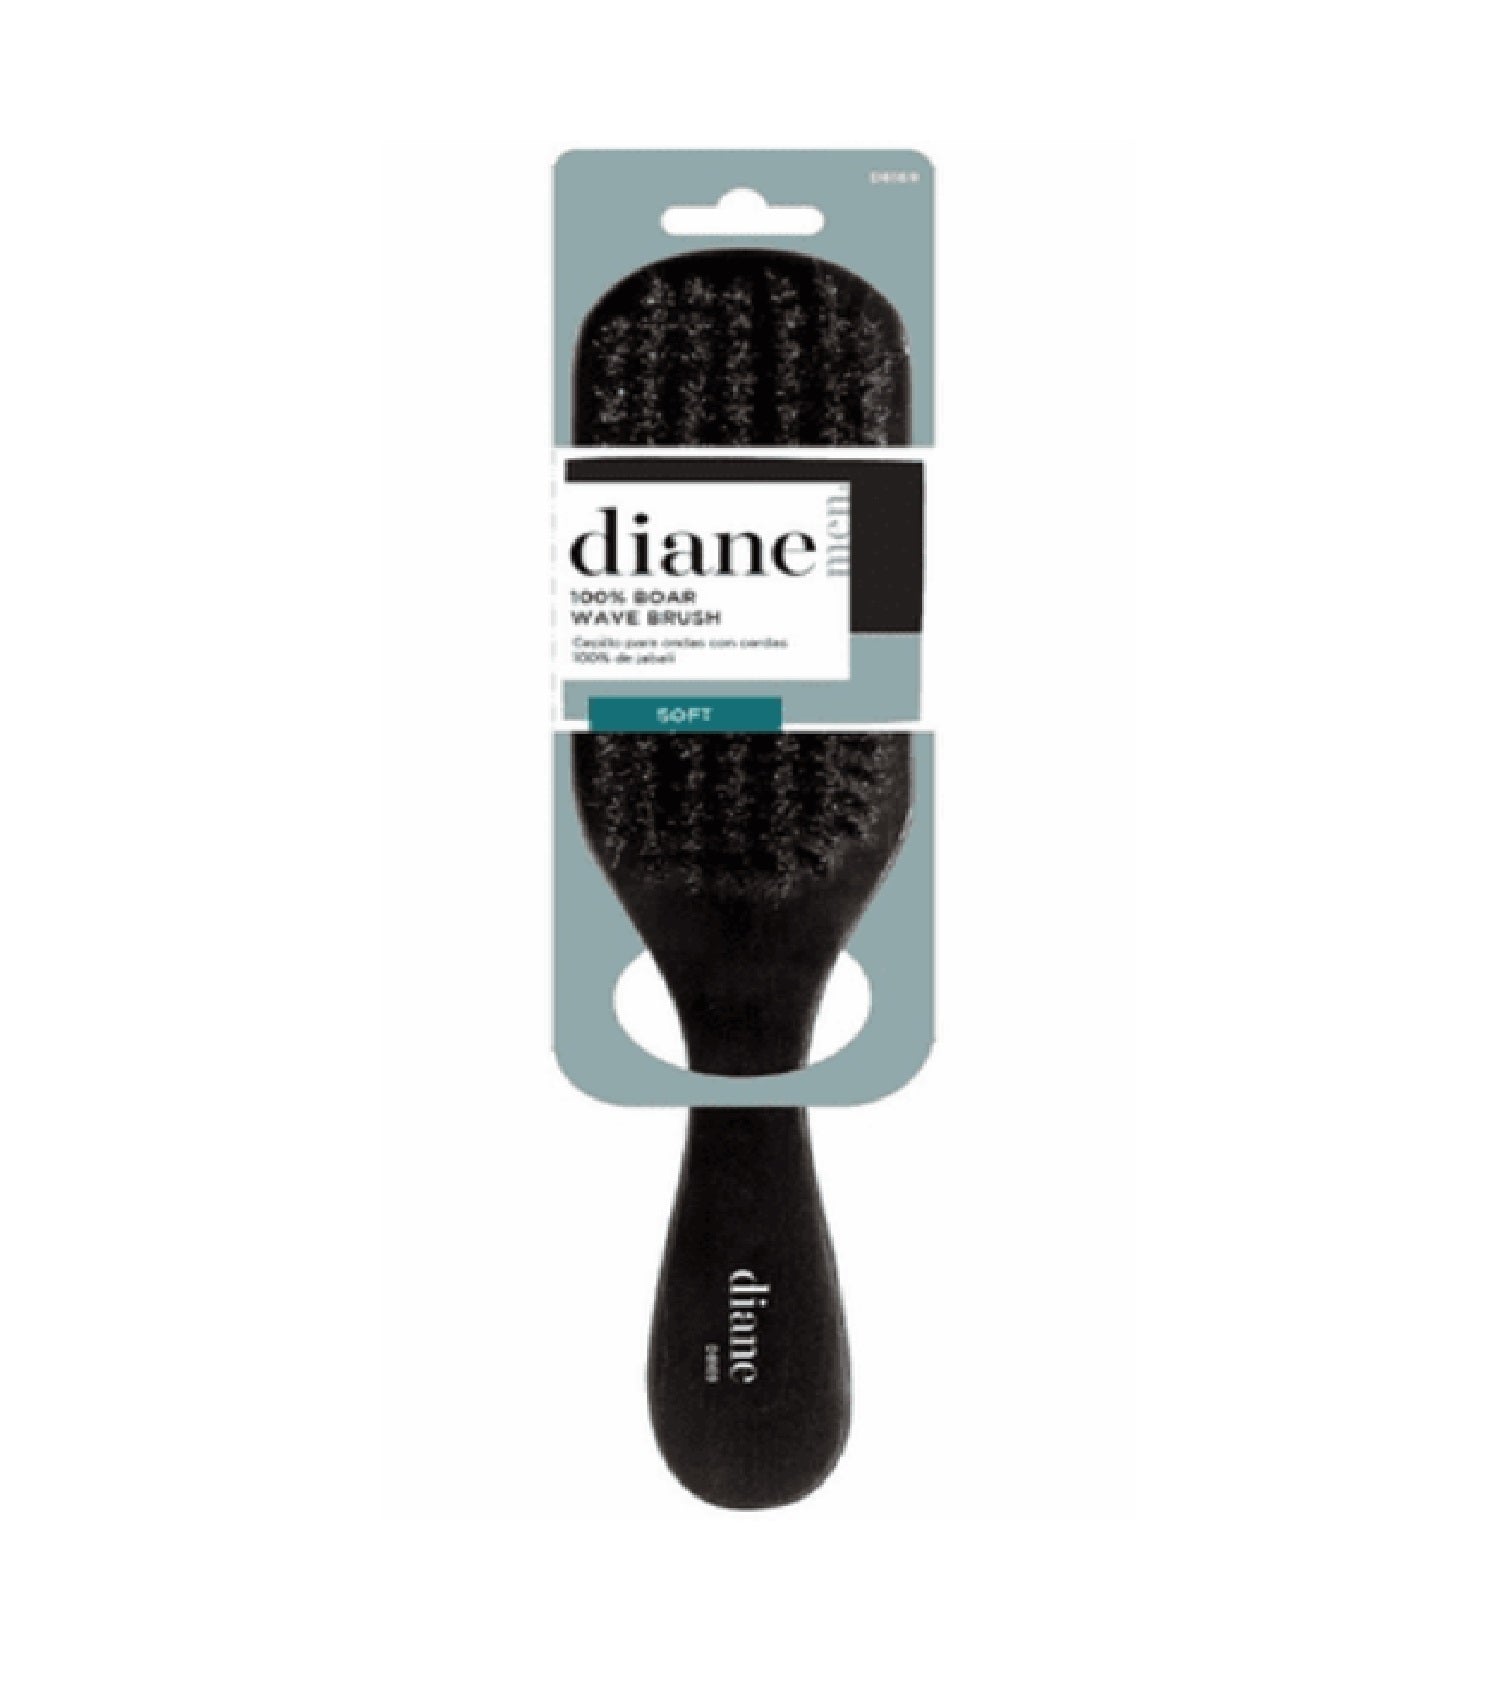 Diane Premium 100% Med Boar Wave Brush D8119